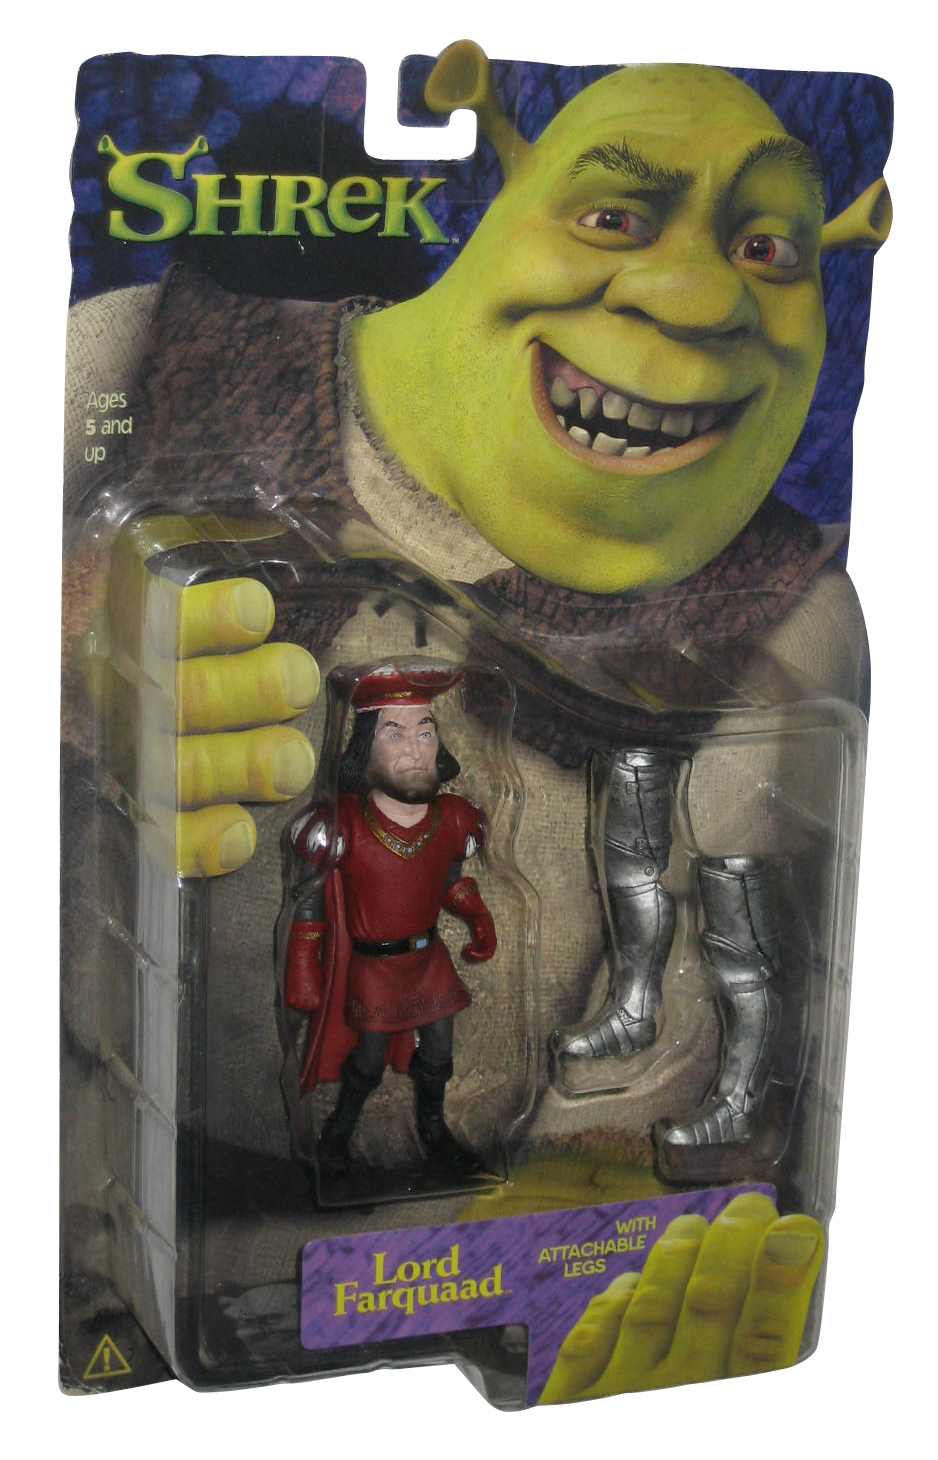 Shrek Toy Figures